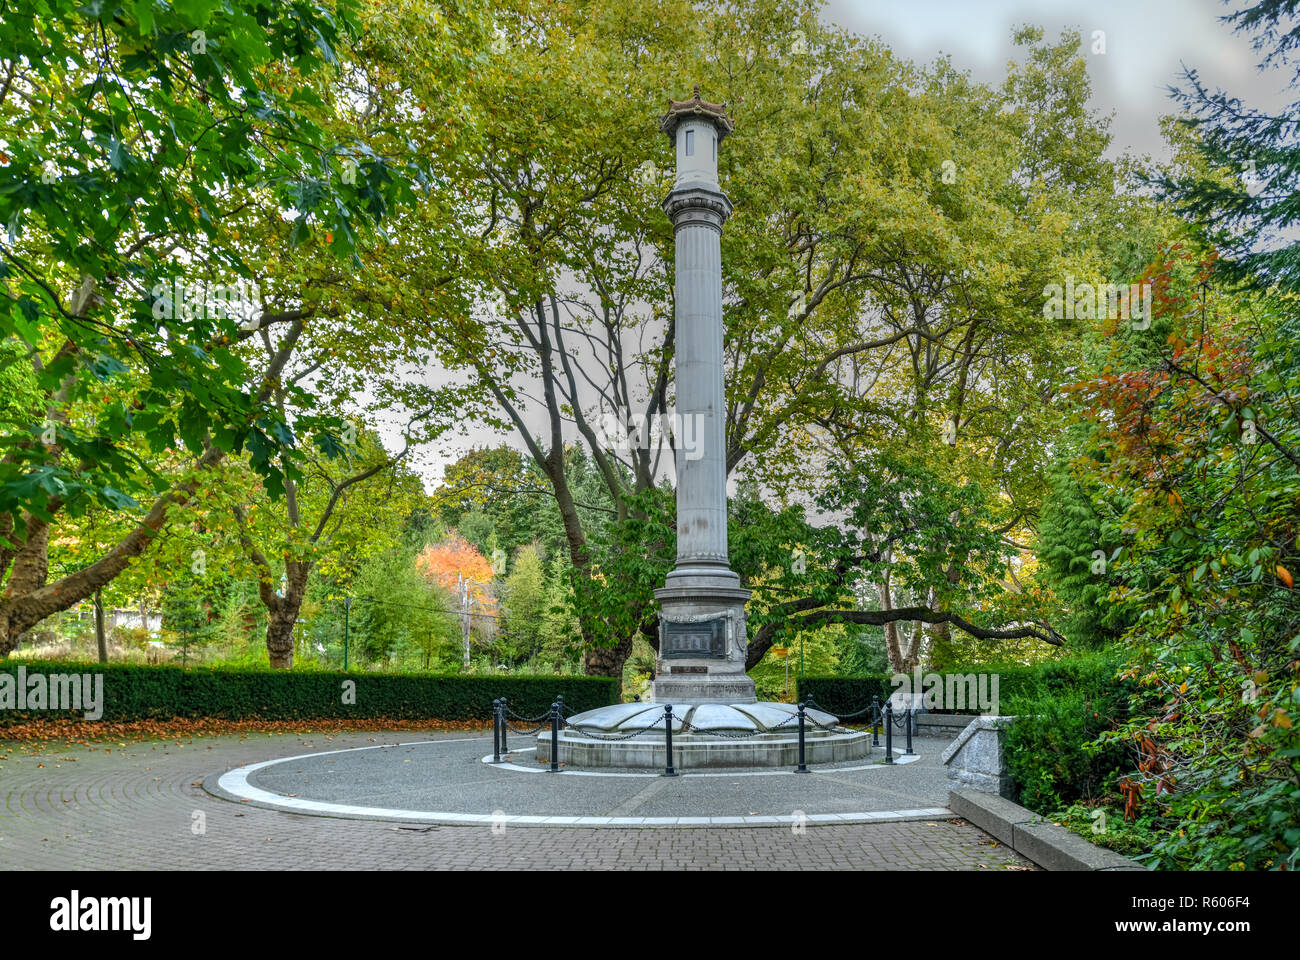 Japanese Canadian War Memorial, erigido en memoria a los canadienses de origen japonés que sirvió en la Primera Guerra Mundial. Situado en el parque Stanley, Vancouver, Britis Foto de stock